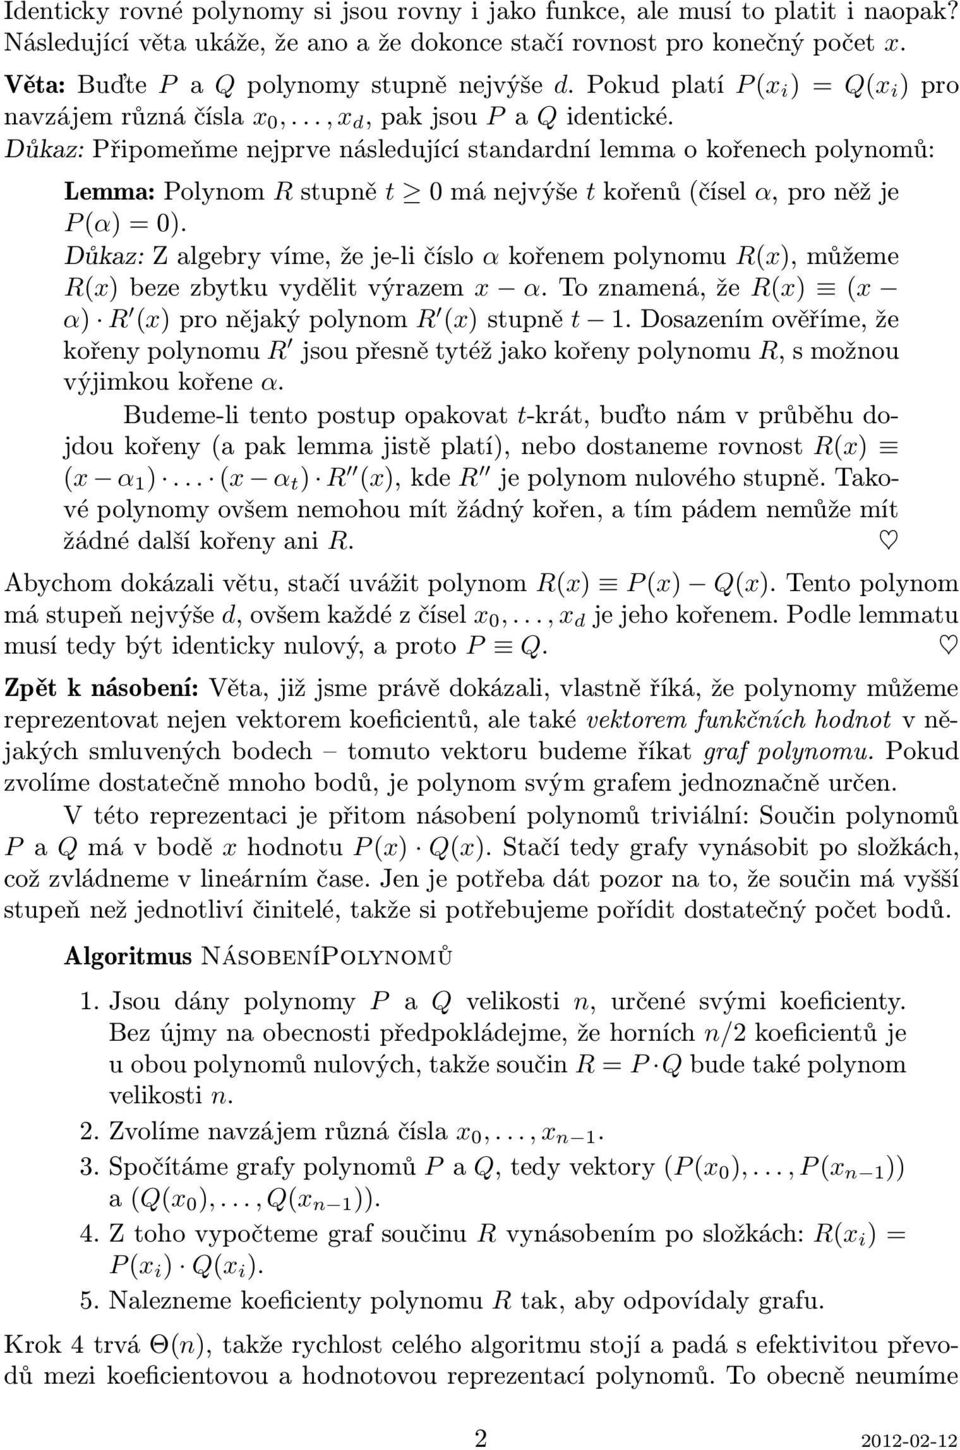 Důkaz: Připomeňme nejprve následující standardní lemma o kořenech polynomů: Lemma:Polynom Rstupně t 0mánejvýše tkořenů(čísel α,proněžje P(α)=0).